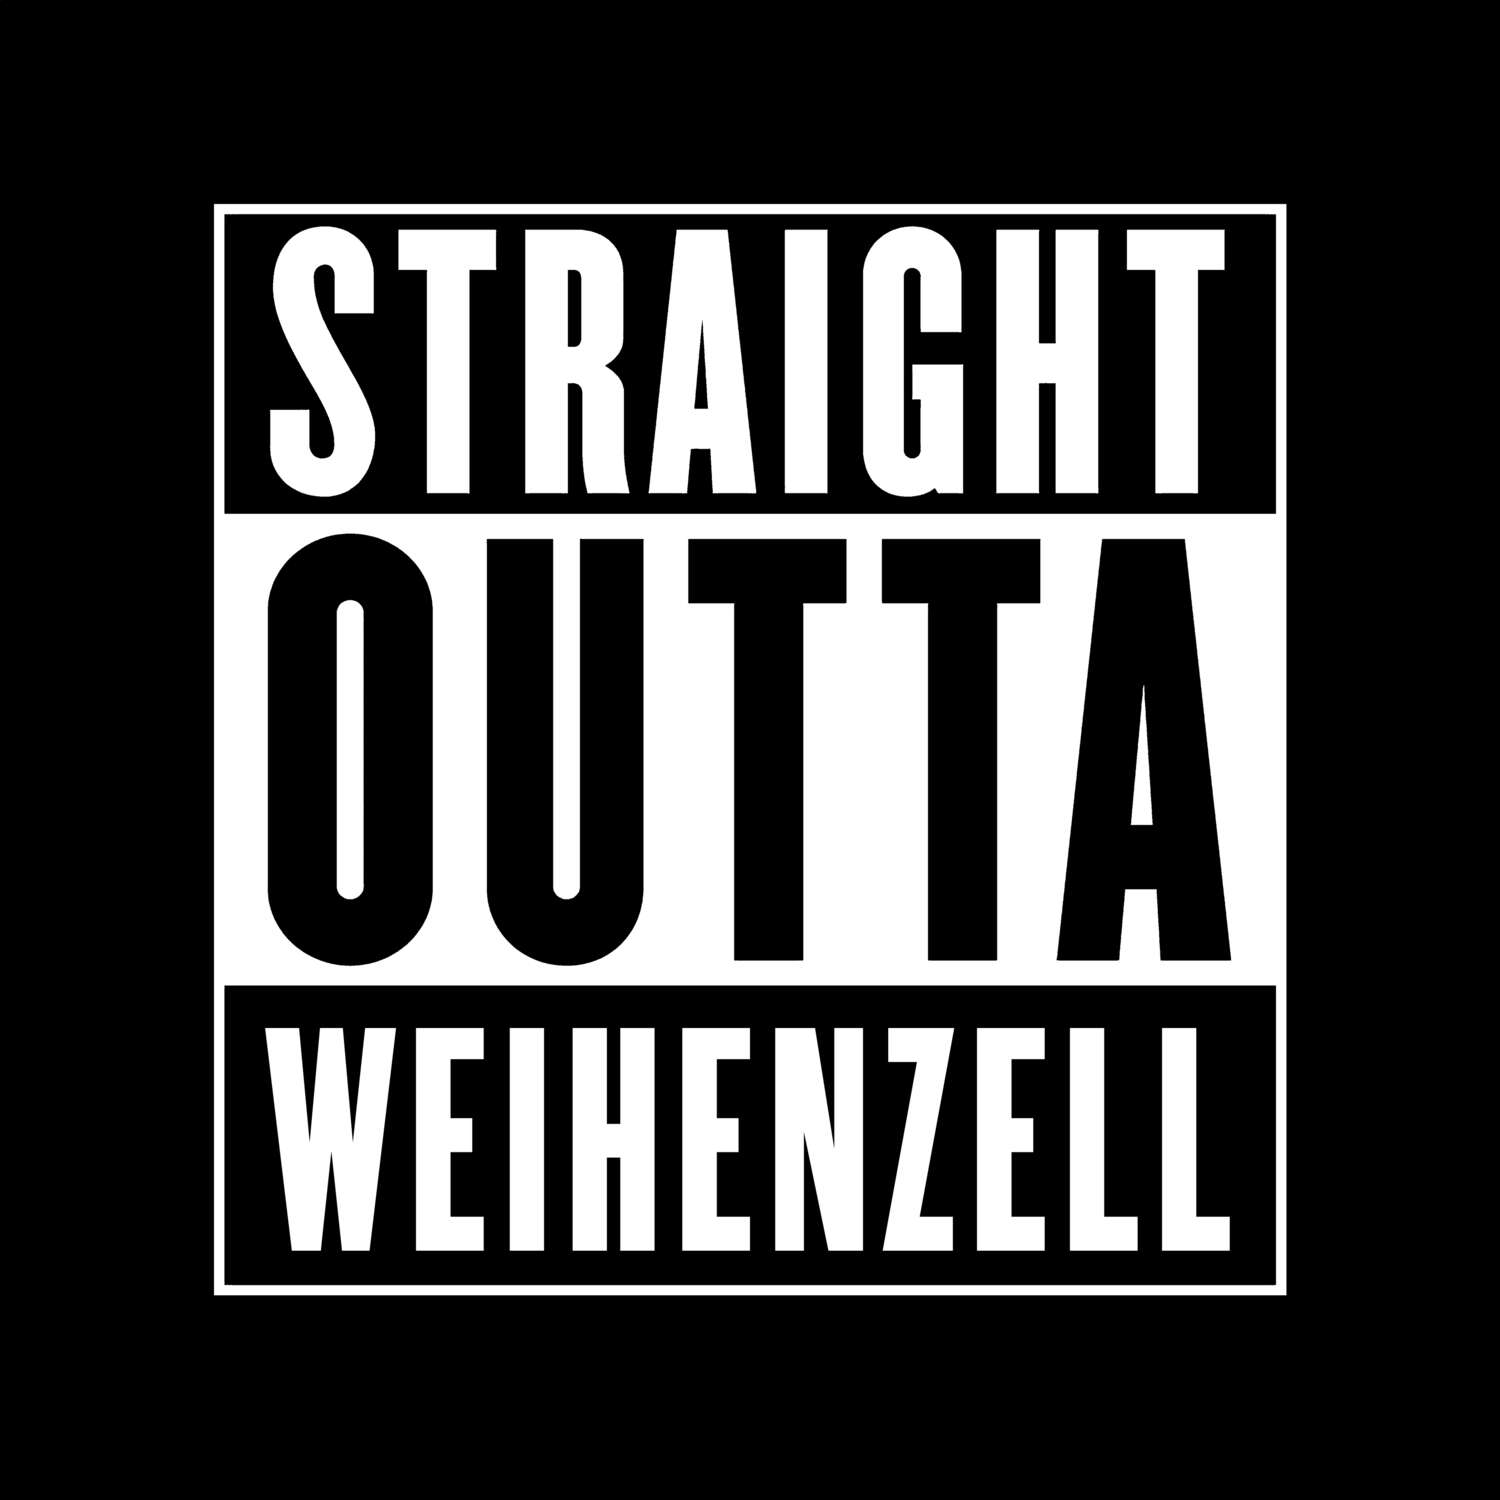 Weihenzell T-Shirt »Straight Outta«